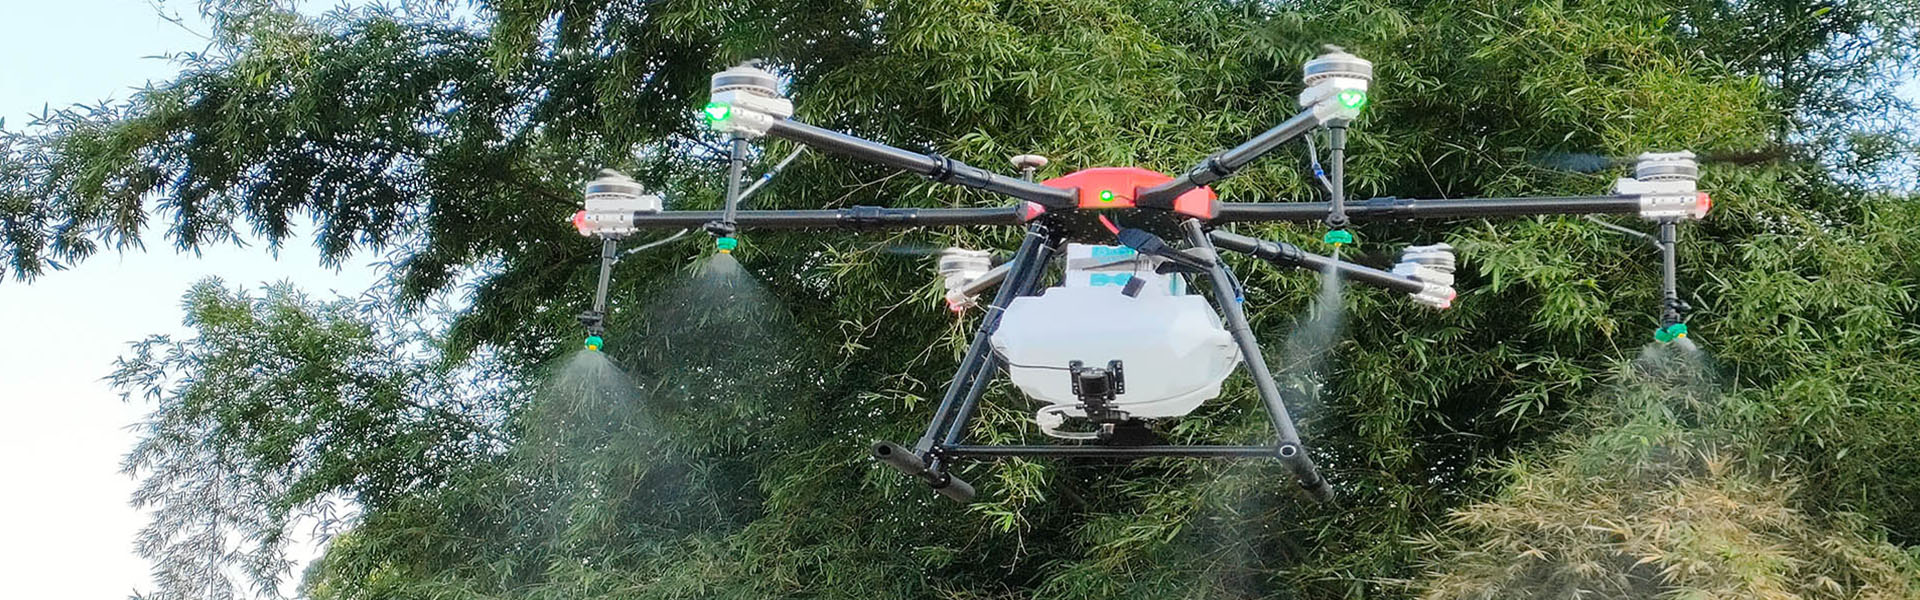 농업 UAV, 식물 보호 UAV, 농업 UAV 액세서리,Shenzhen fnyuav technology co.LTD